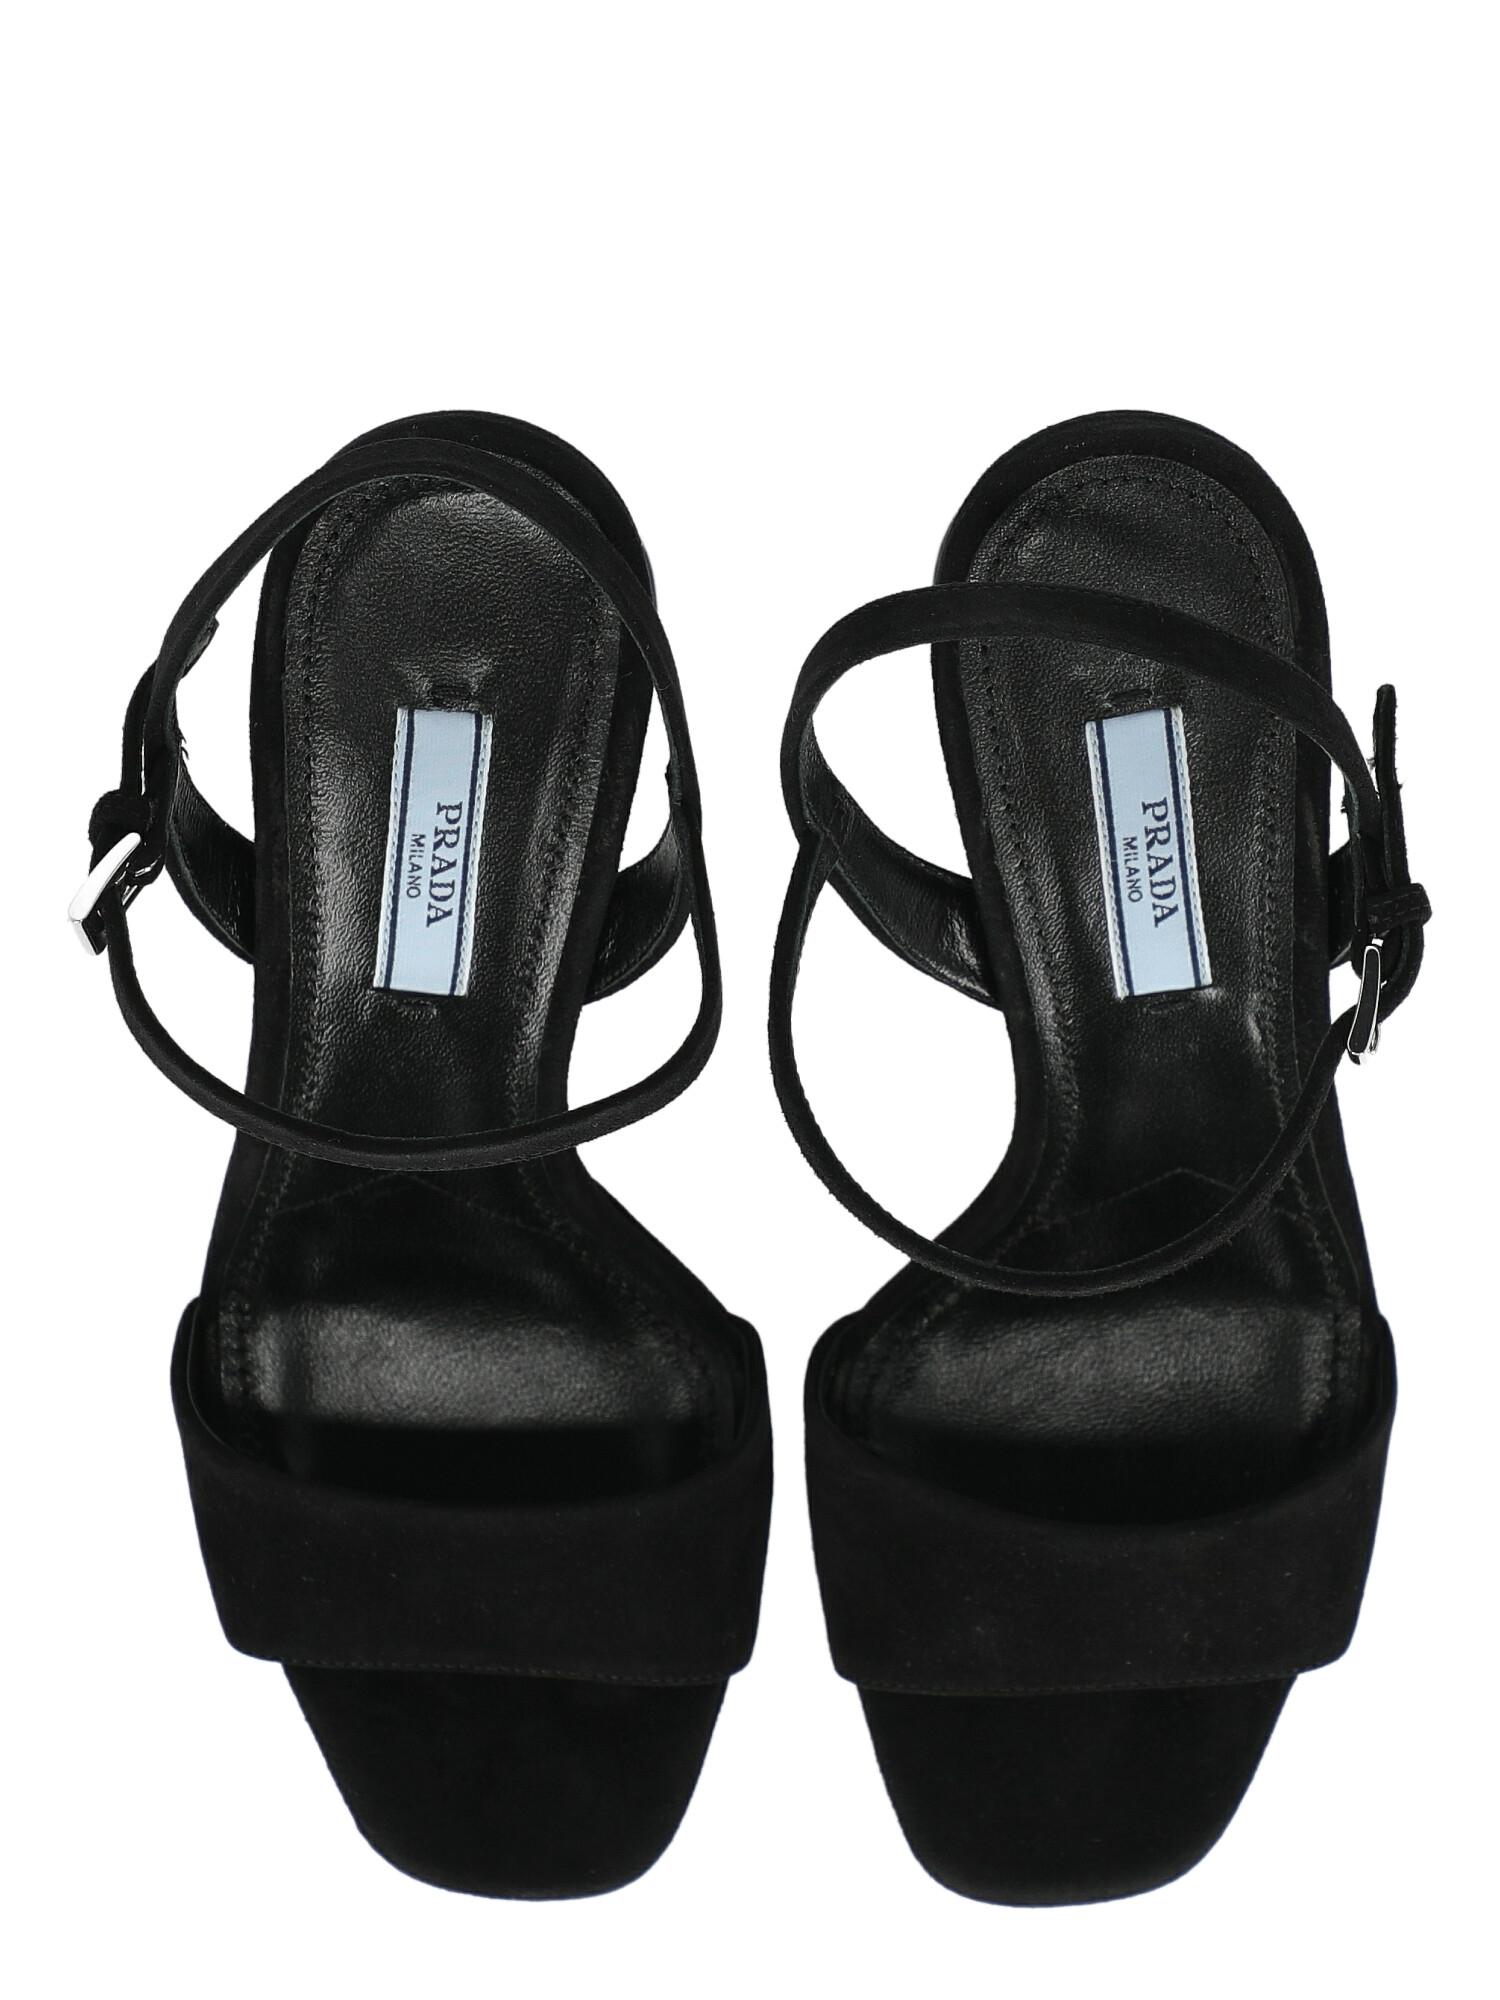 Prada  Women   Sandals  Black Leather EU 40 1